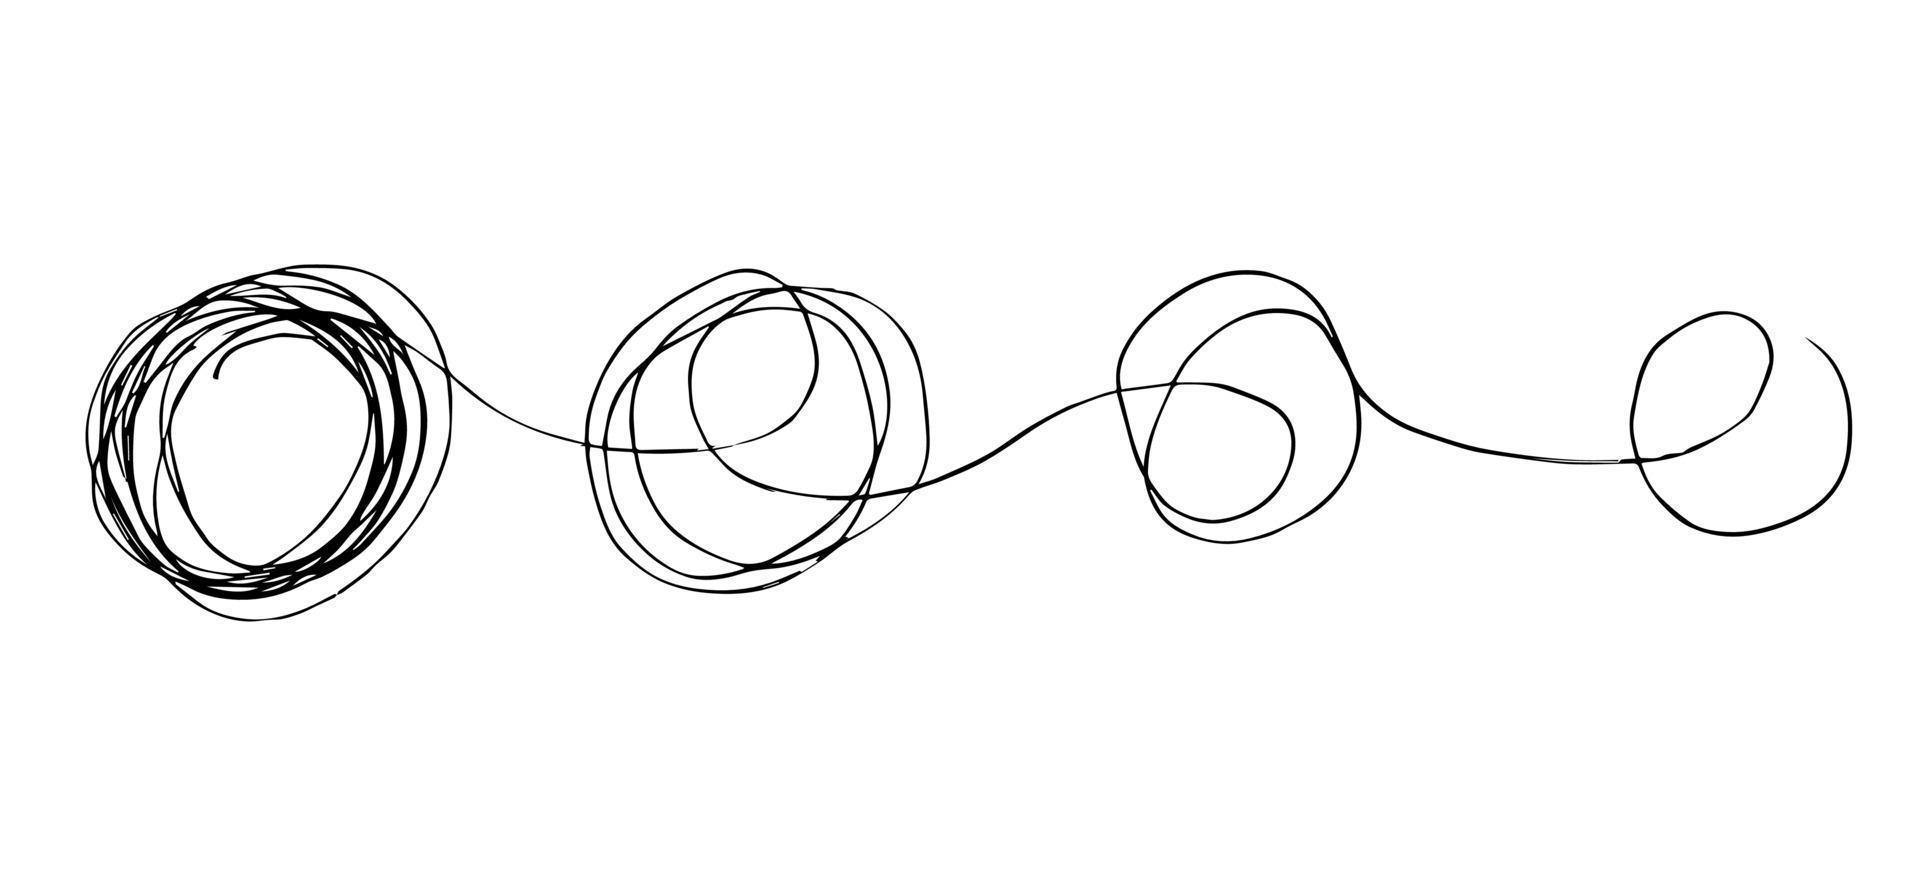 handritad av härva klottra sketch.abstract klotter, kaos doodle mönster. vektor illustration isolerad på vit bakgrund